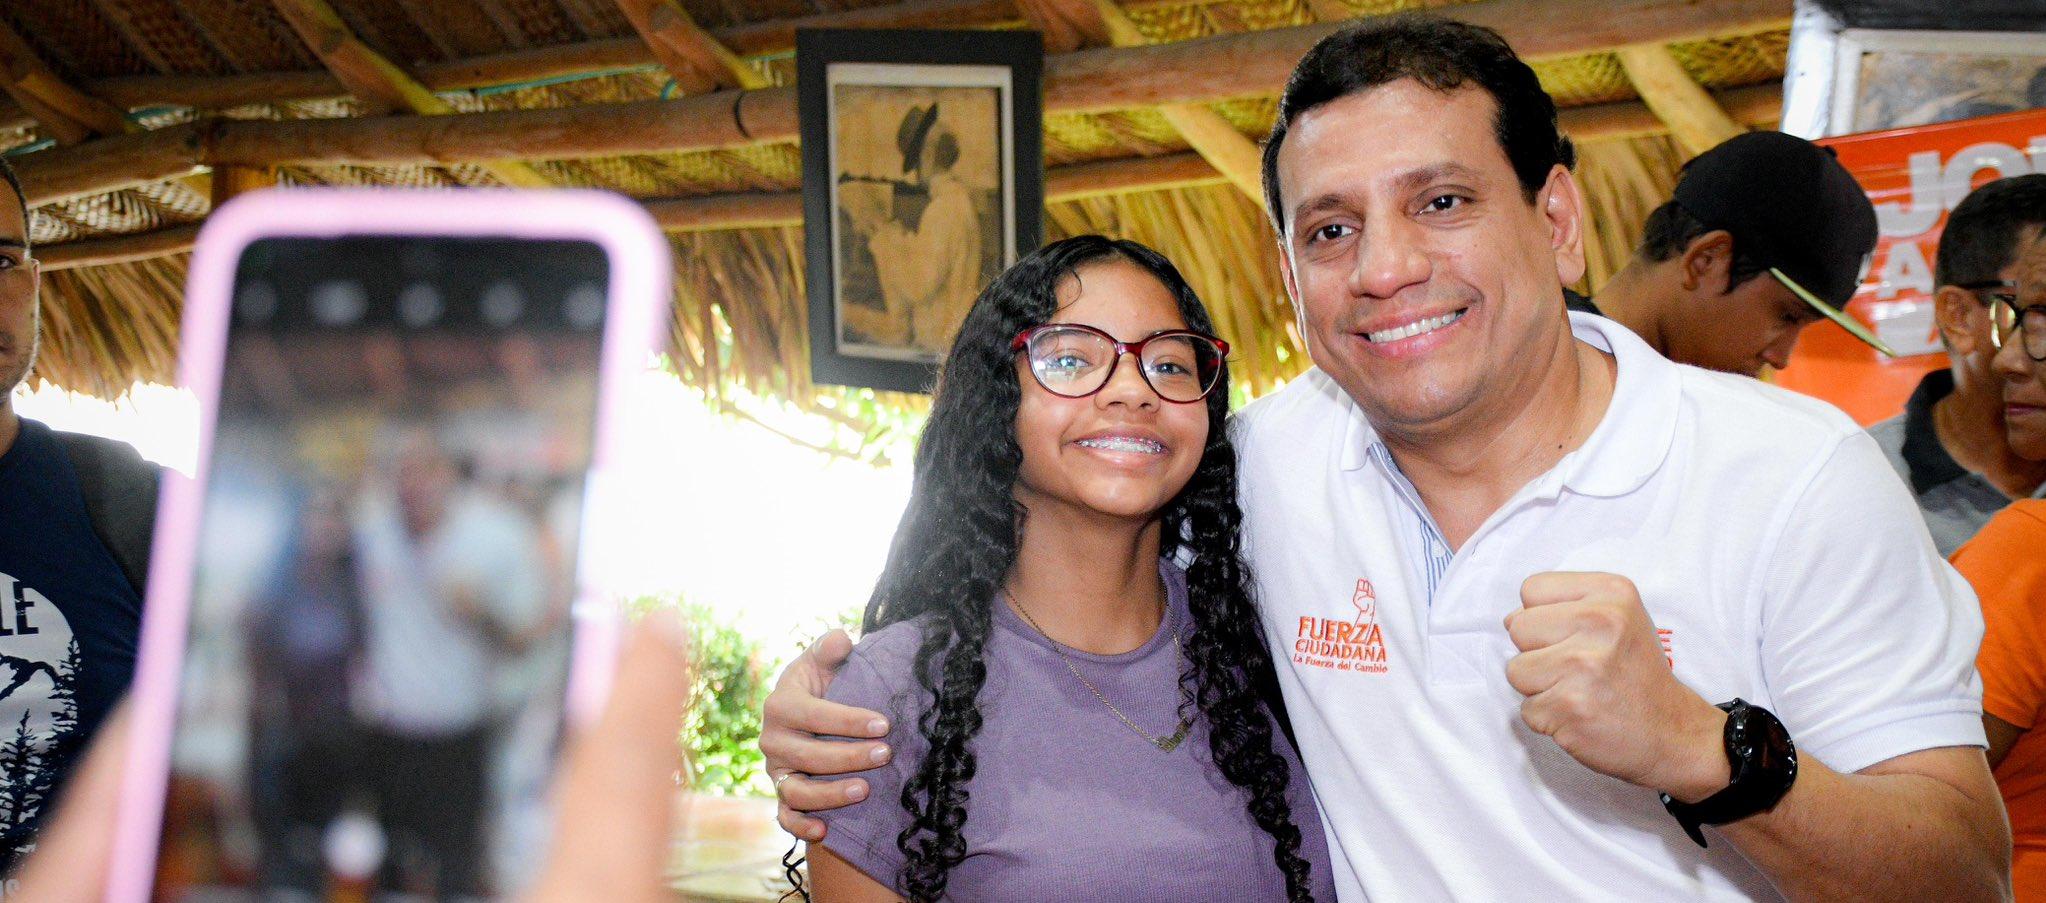 Jorge Agudelo en campaña para ser Alcalde de Santa Marta.